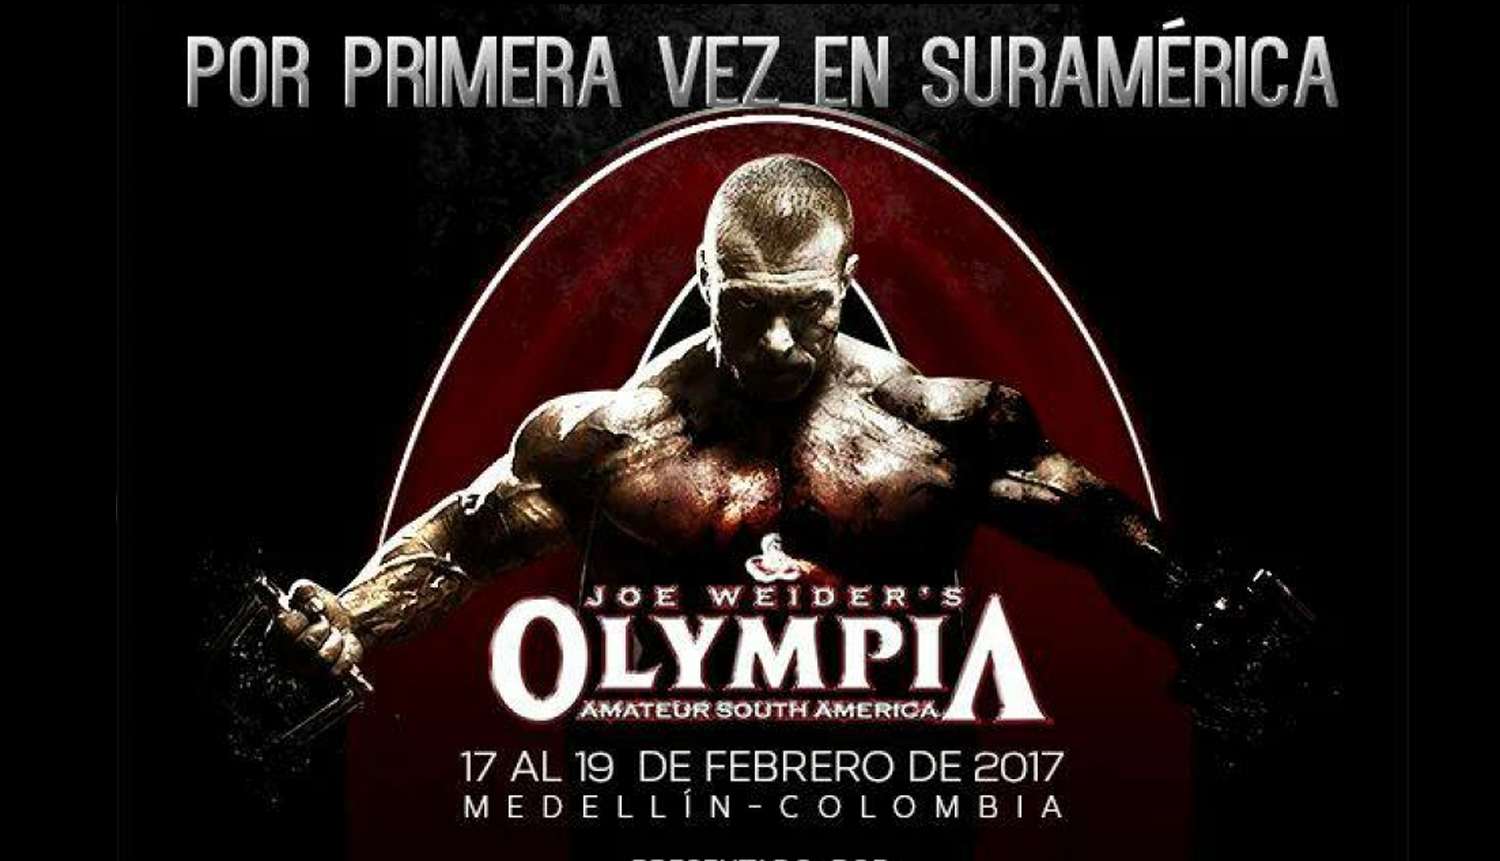 Mr. Olympia Amateur Sudamerica 2017 Reporte de Inspeccion final